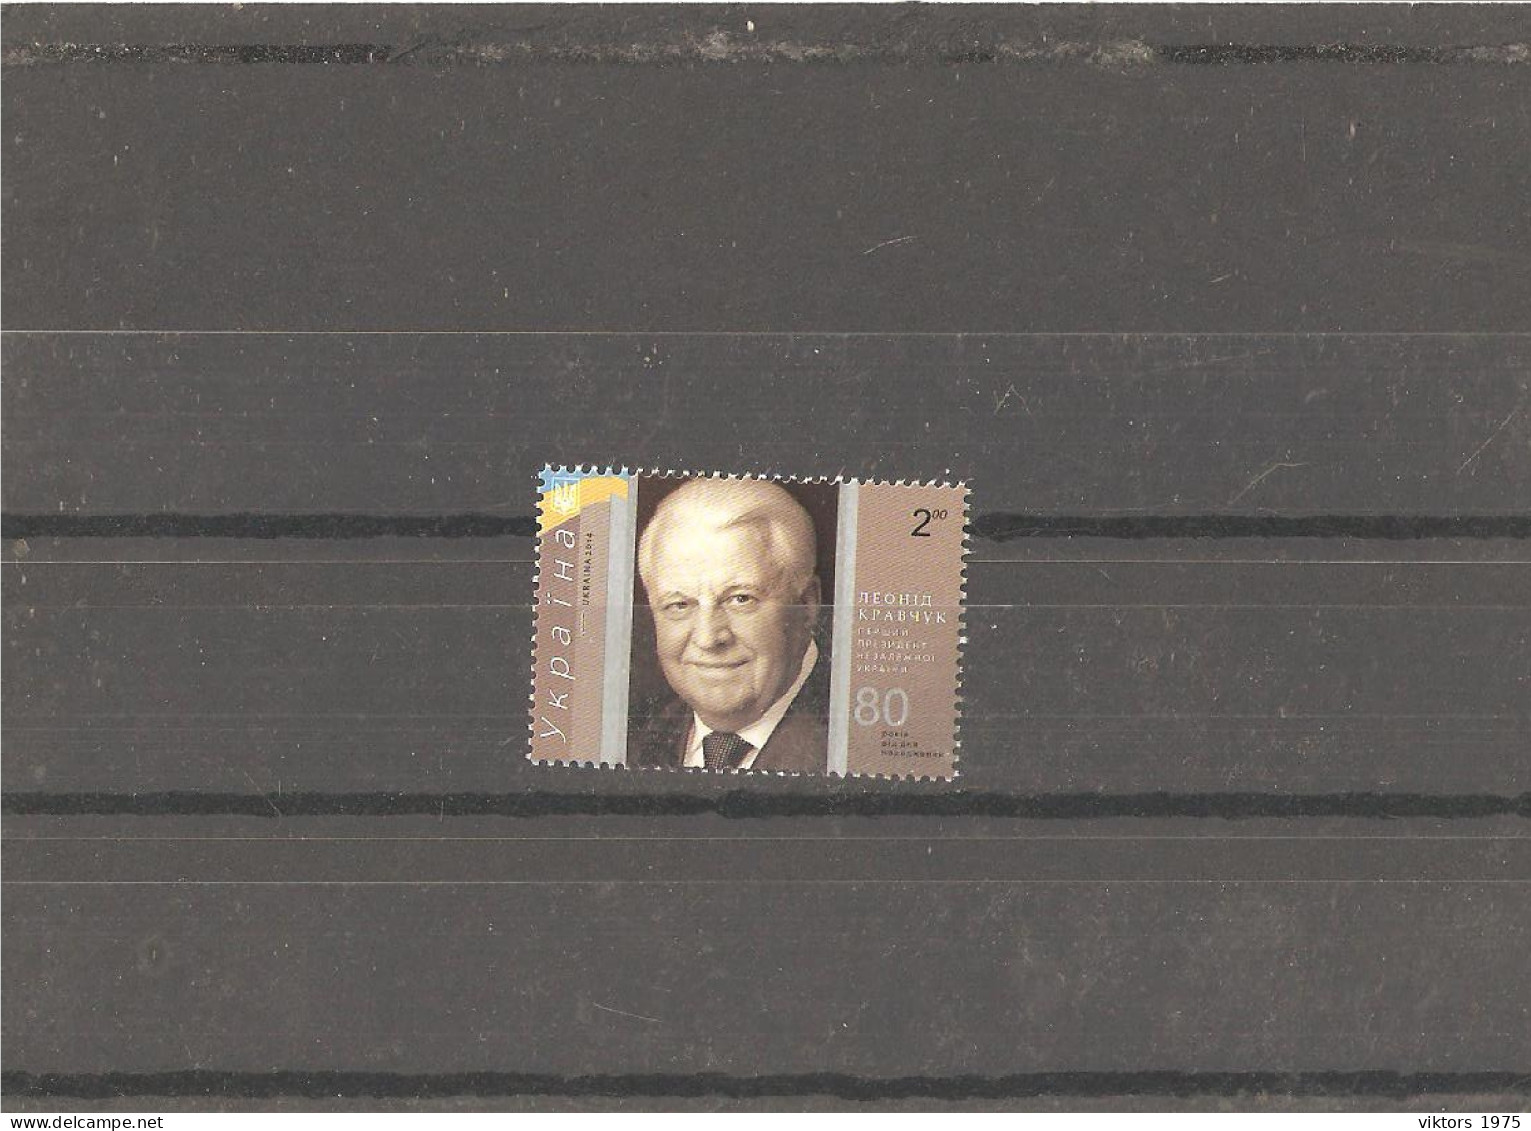 MNH Stamp Nr.1398 In MICHEL Catalog - Ukraine